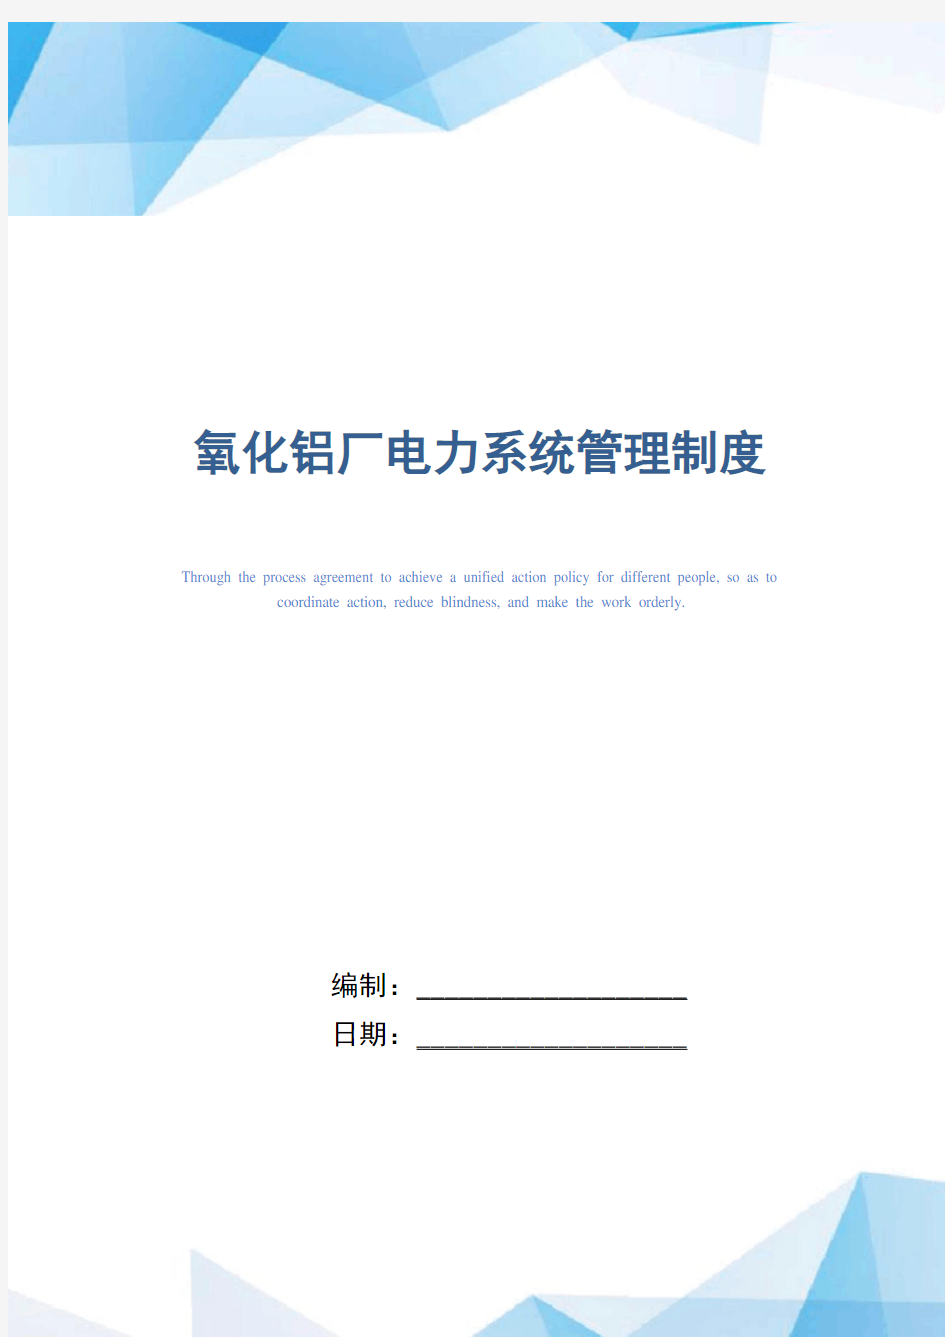 氧化铝厂电力系统管理制度(正式版)